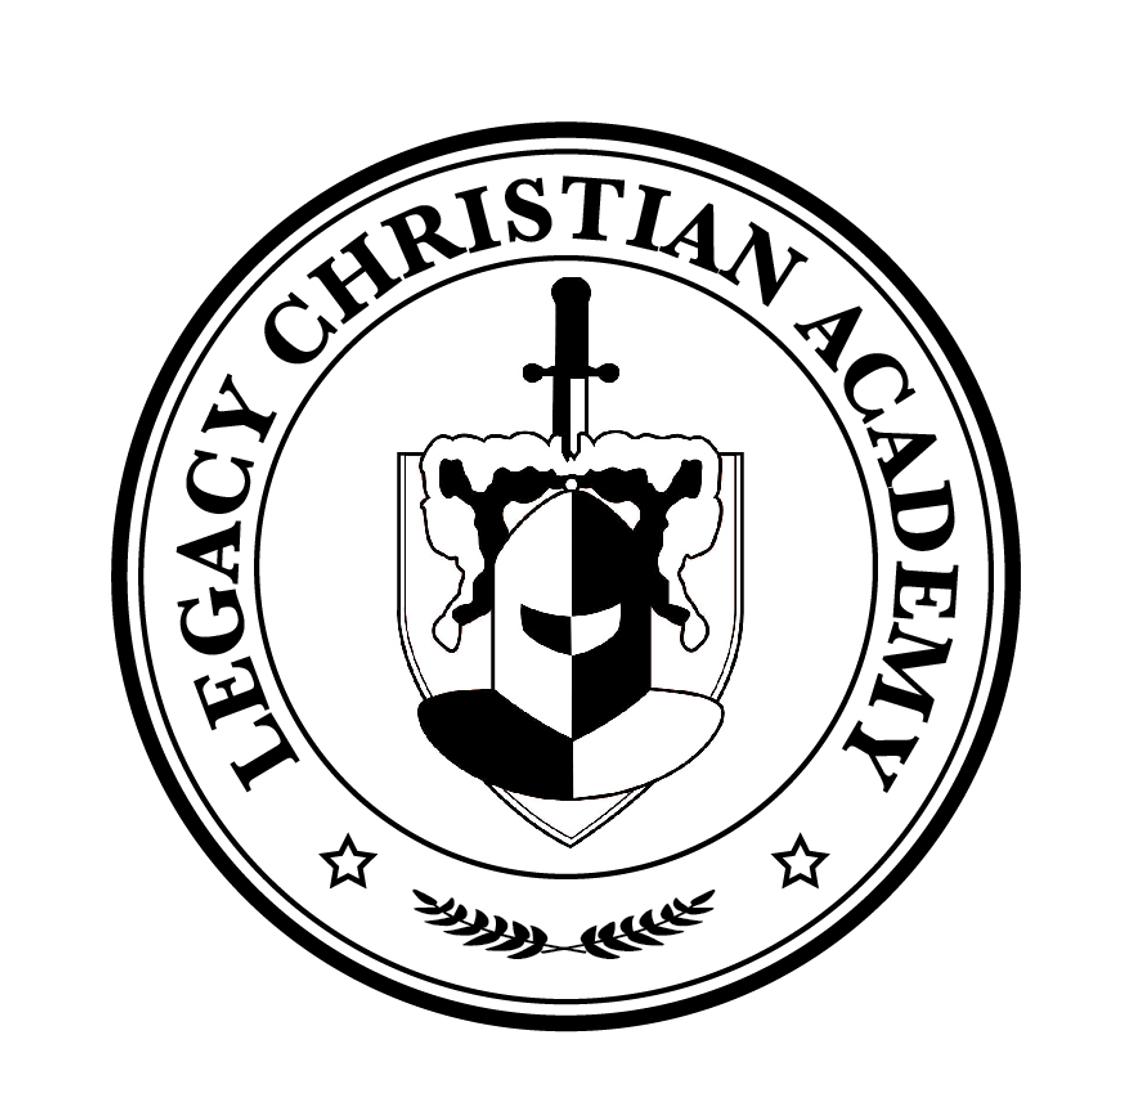 Legacy Christian Academy Photo